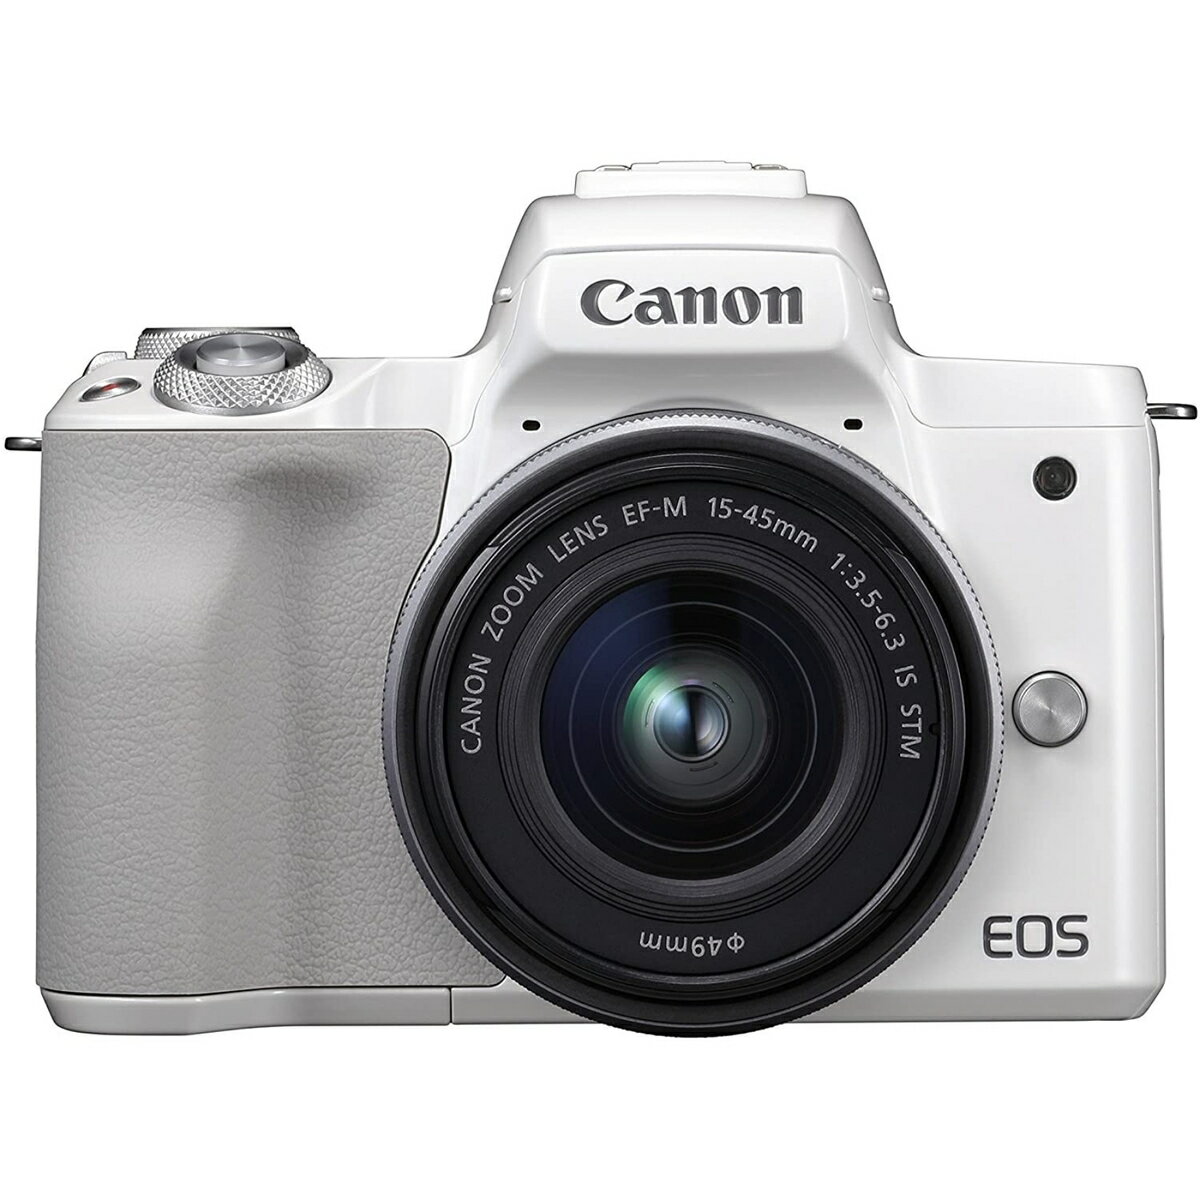 デジタルカメラ, ミラーレス一眼カメラ 252320:005271:59Canon EOS Kiss M EF-M15-45 IS STM 